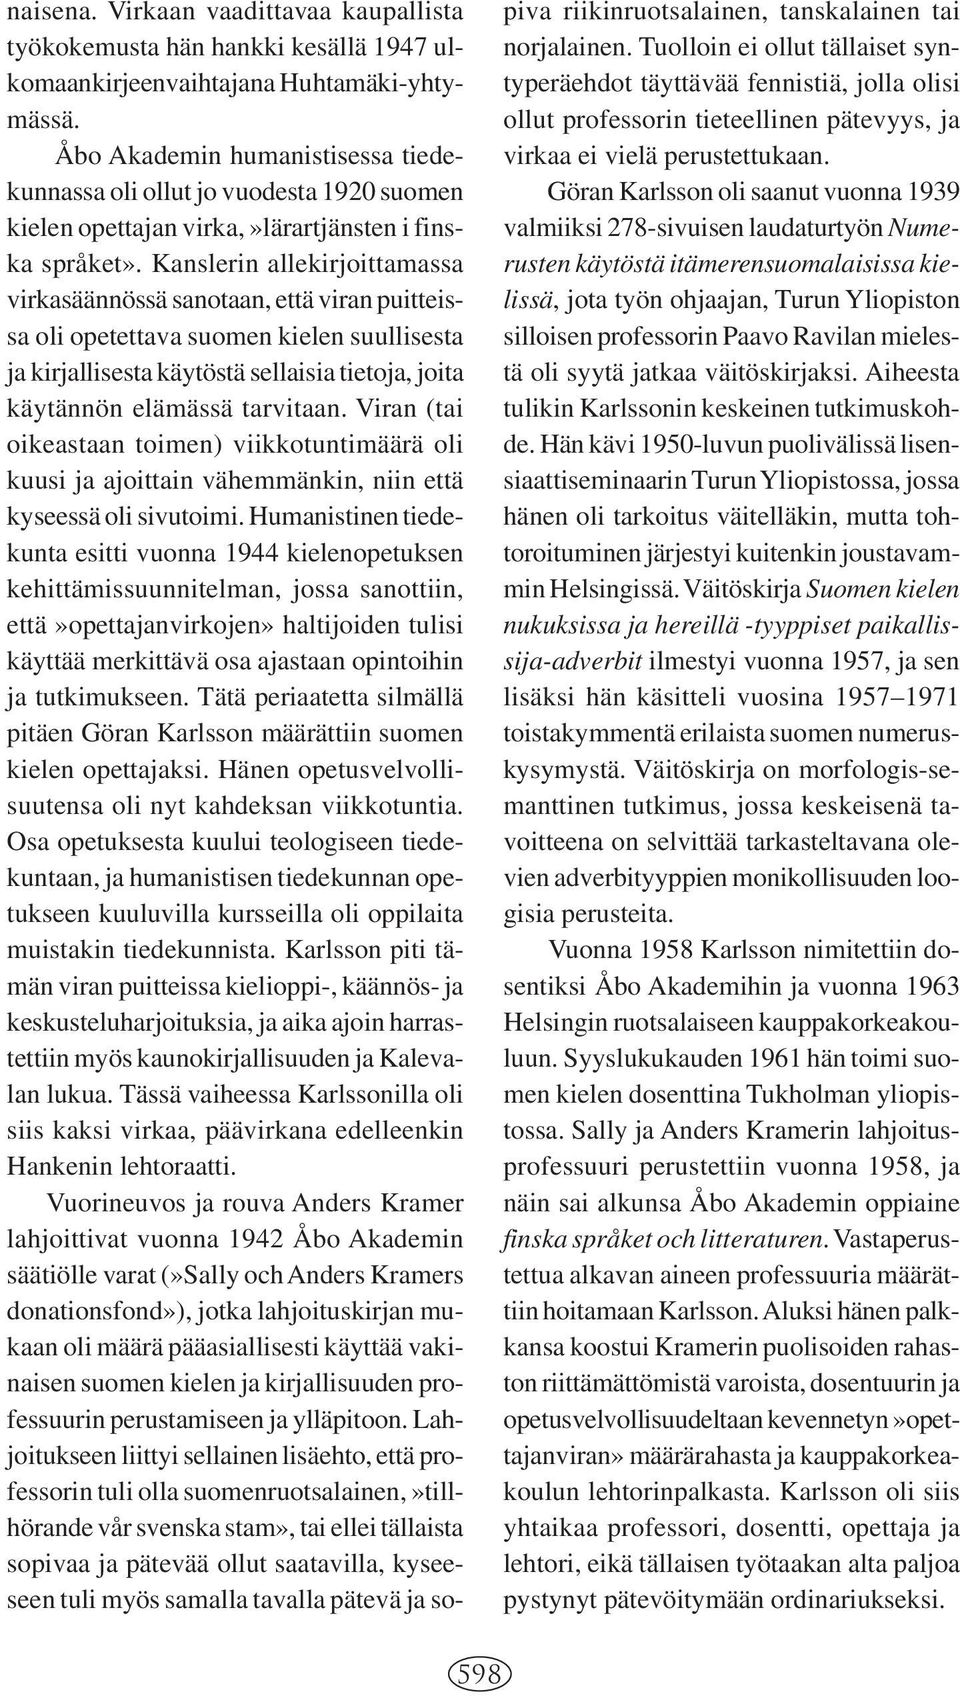 Kanslerin allekirjoittamassa virkasäännössä sanotaan, että viran puitteissa oli opetettava suomen kielen suullisesta ja kirjallisesta käytöstä sellaisia tietoja, joita käytännön elämässä tarvitaan.